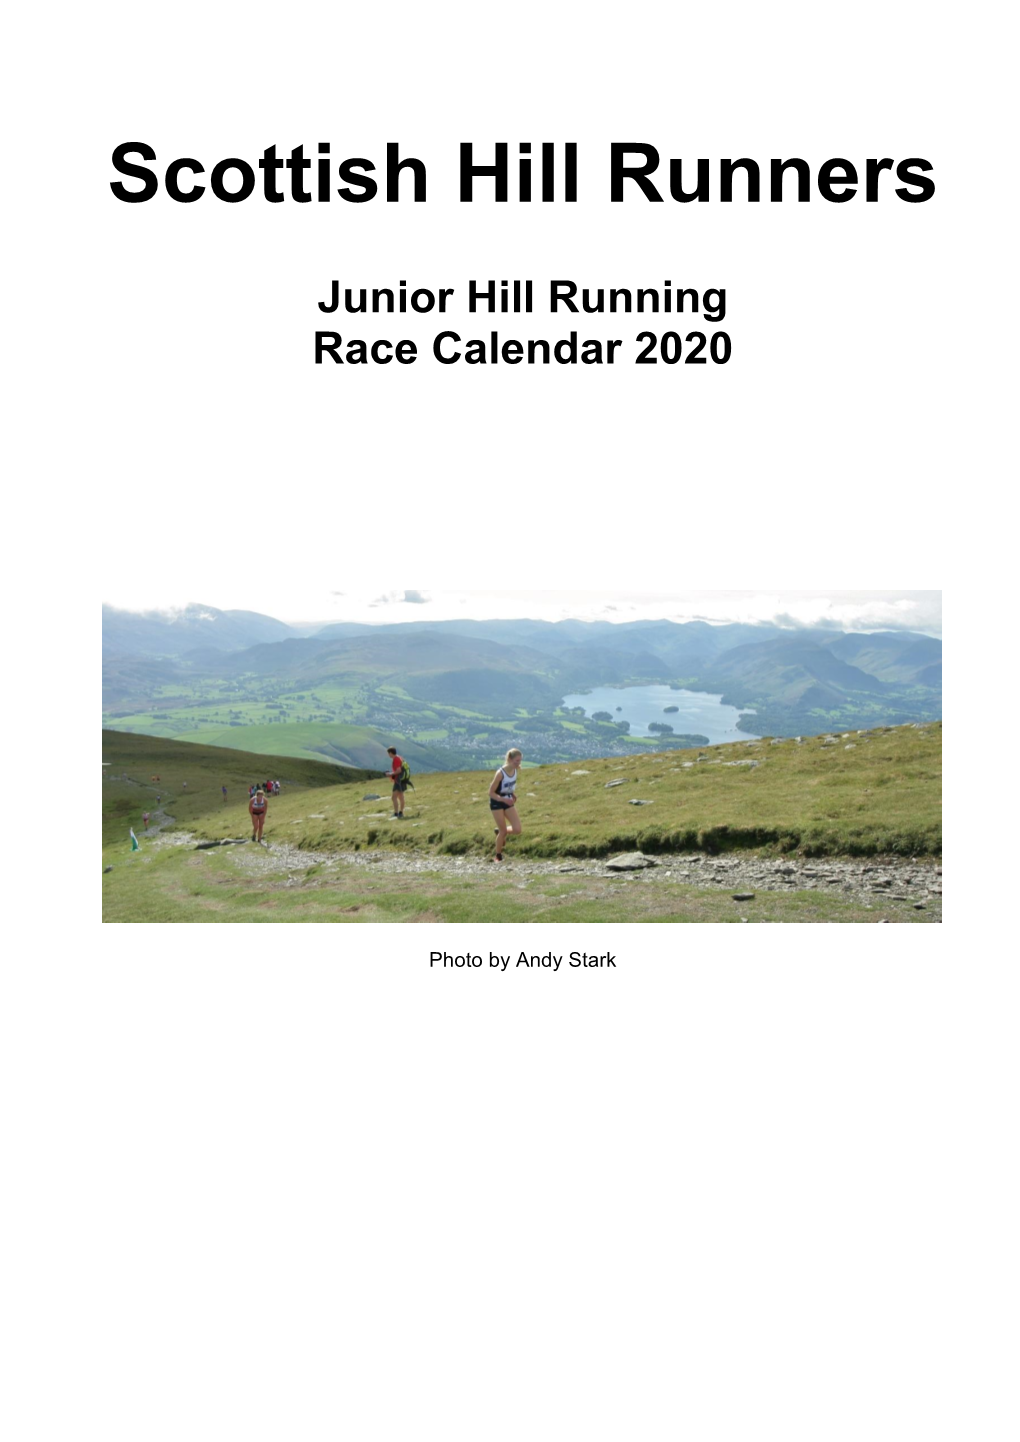 Scottish Hill Runners Junior Hill Running Race Calendar 2020